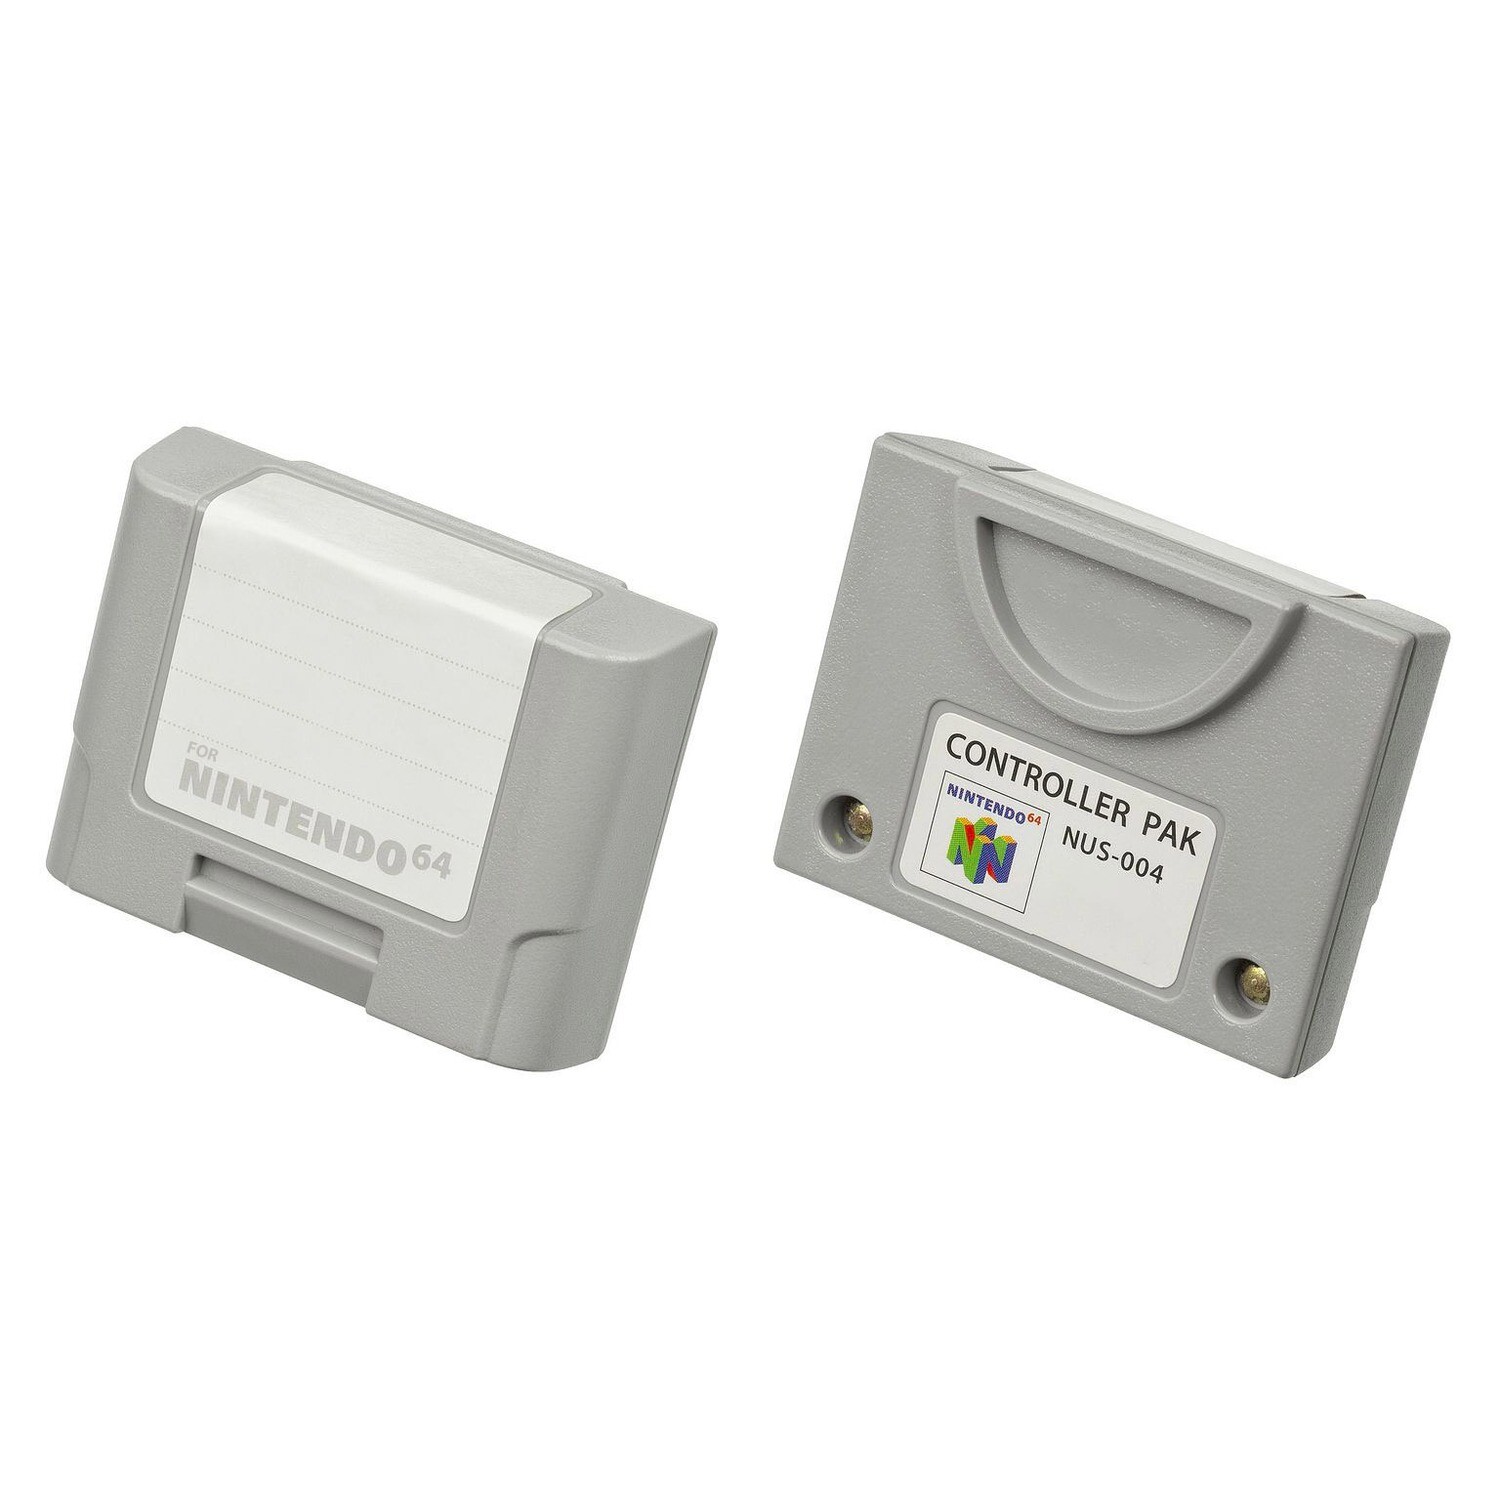 N64 Controller Memory Pak (NUS-004)